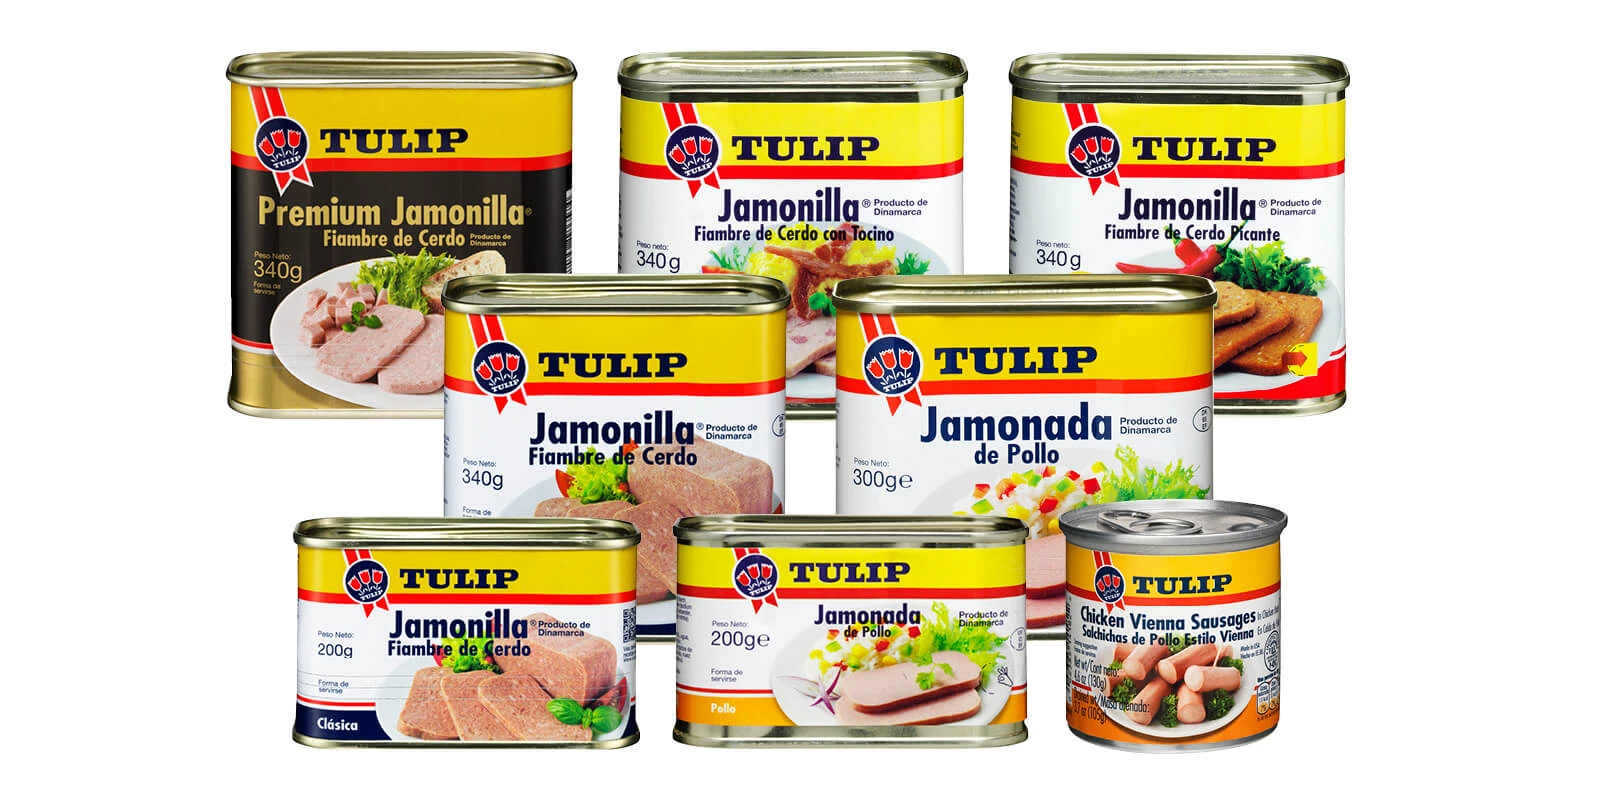 Tulip product line in Panama